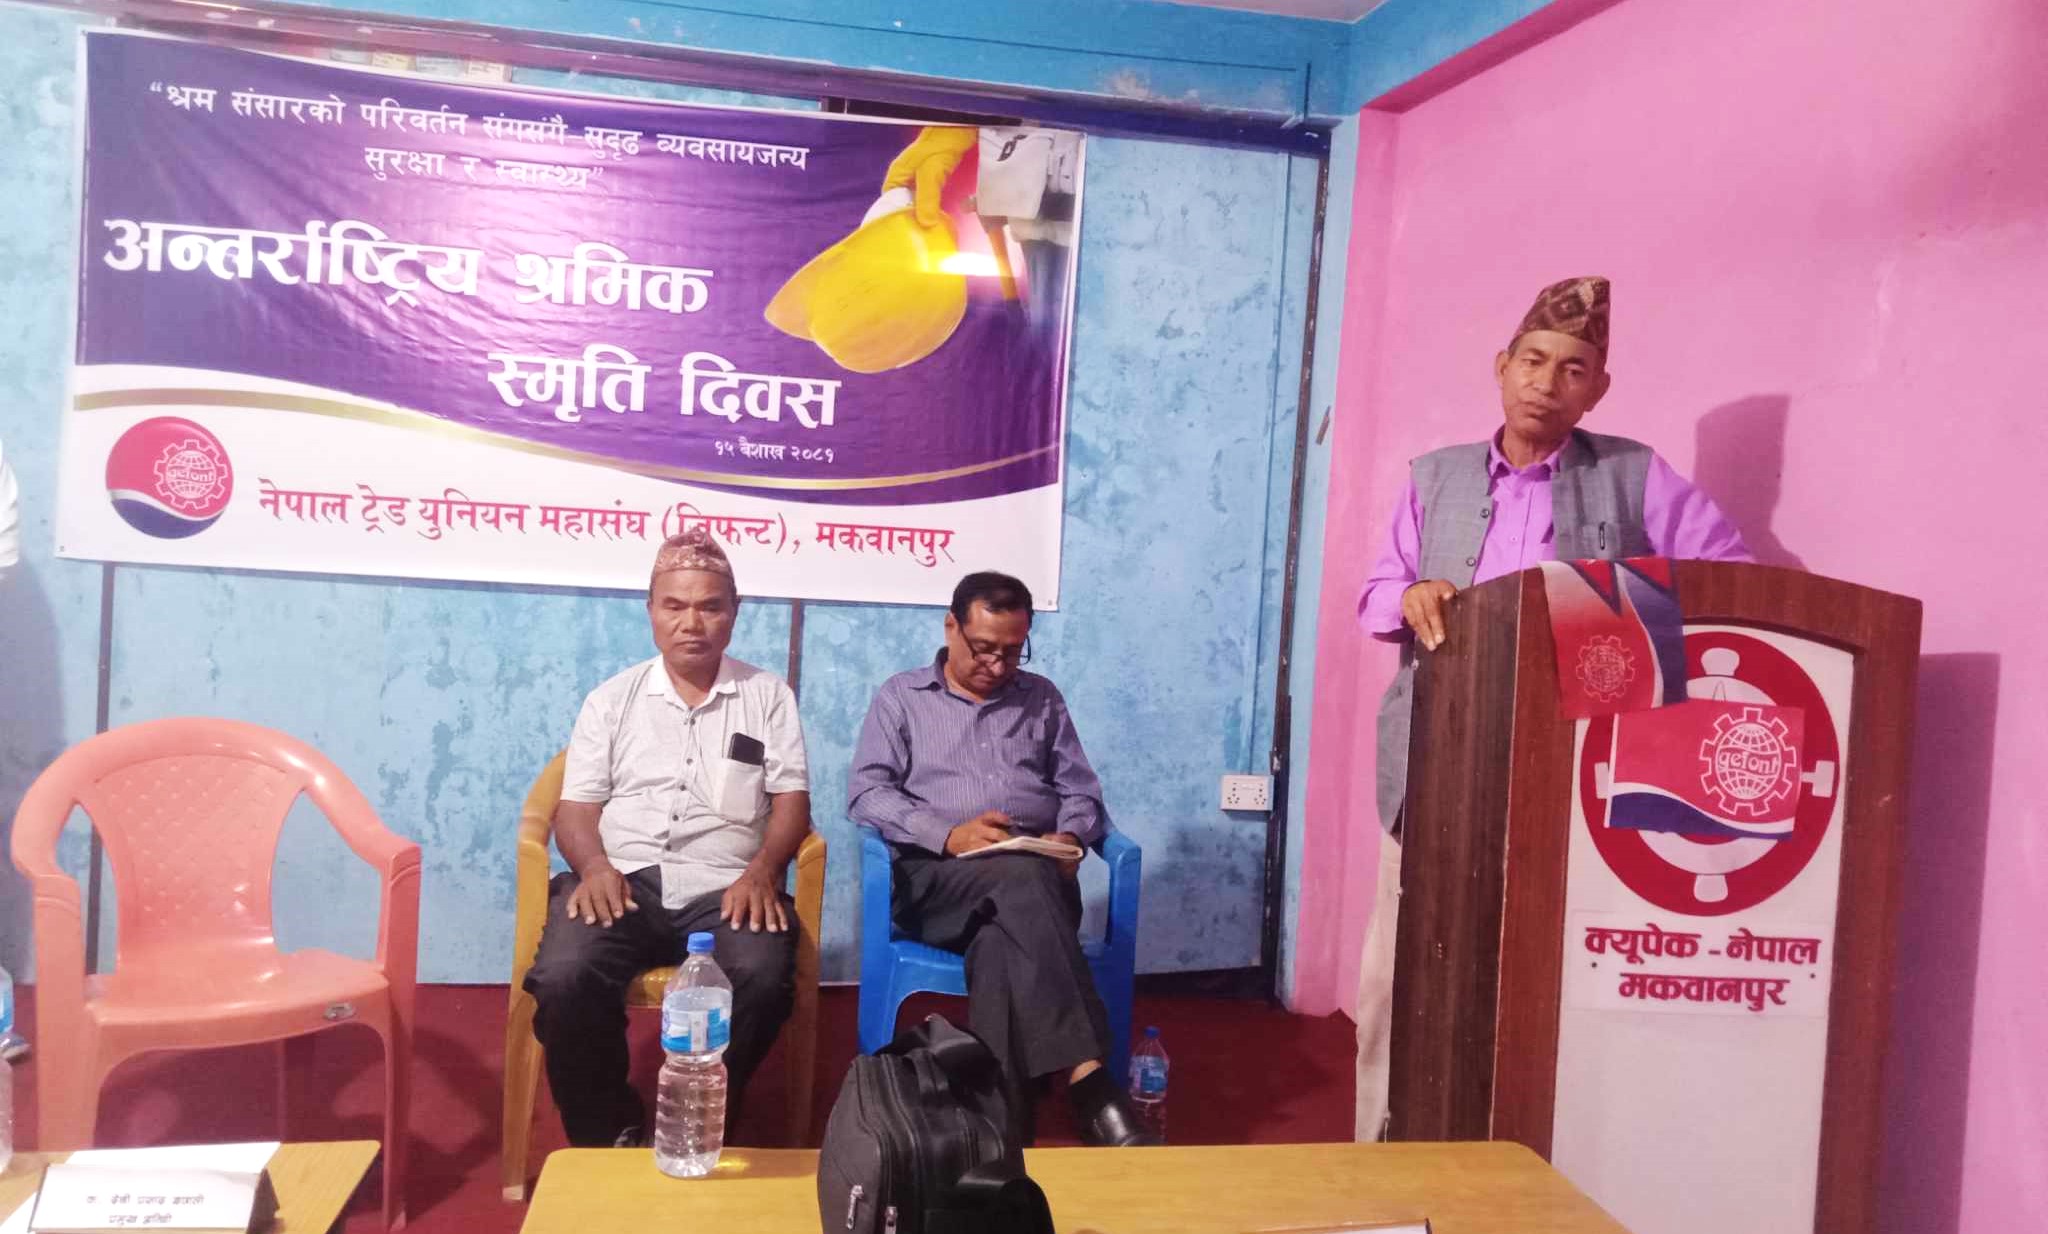 नेपाल ट्रेड युनियन महासंघ (जिफन्ट) मकवानपुरद्वारा आयाेजित अन्तरक्रिया कार्यक्रम सम्पन्न